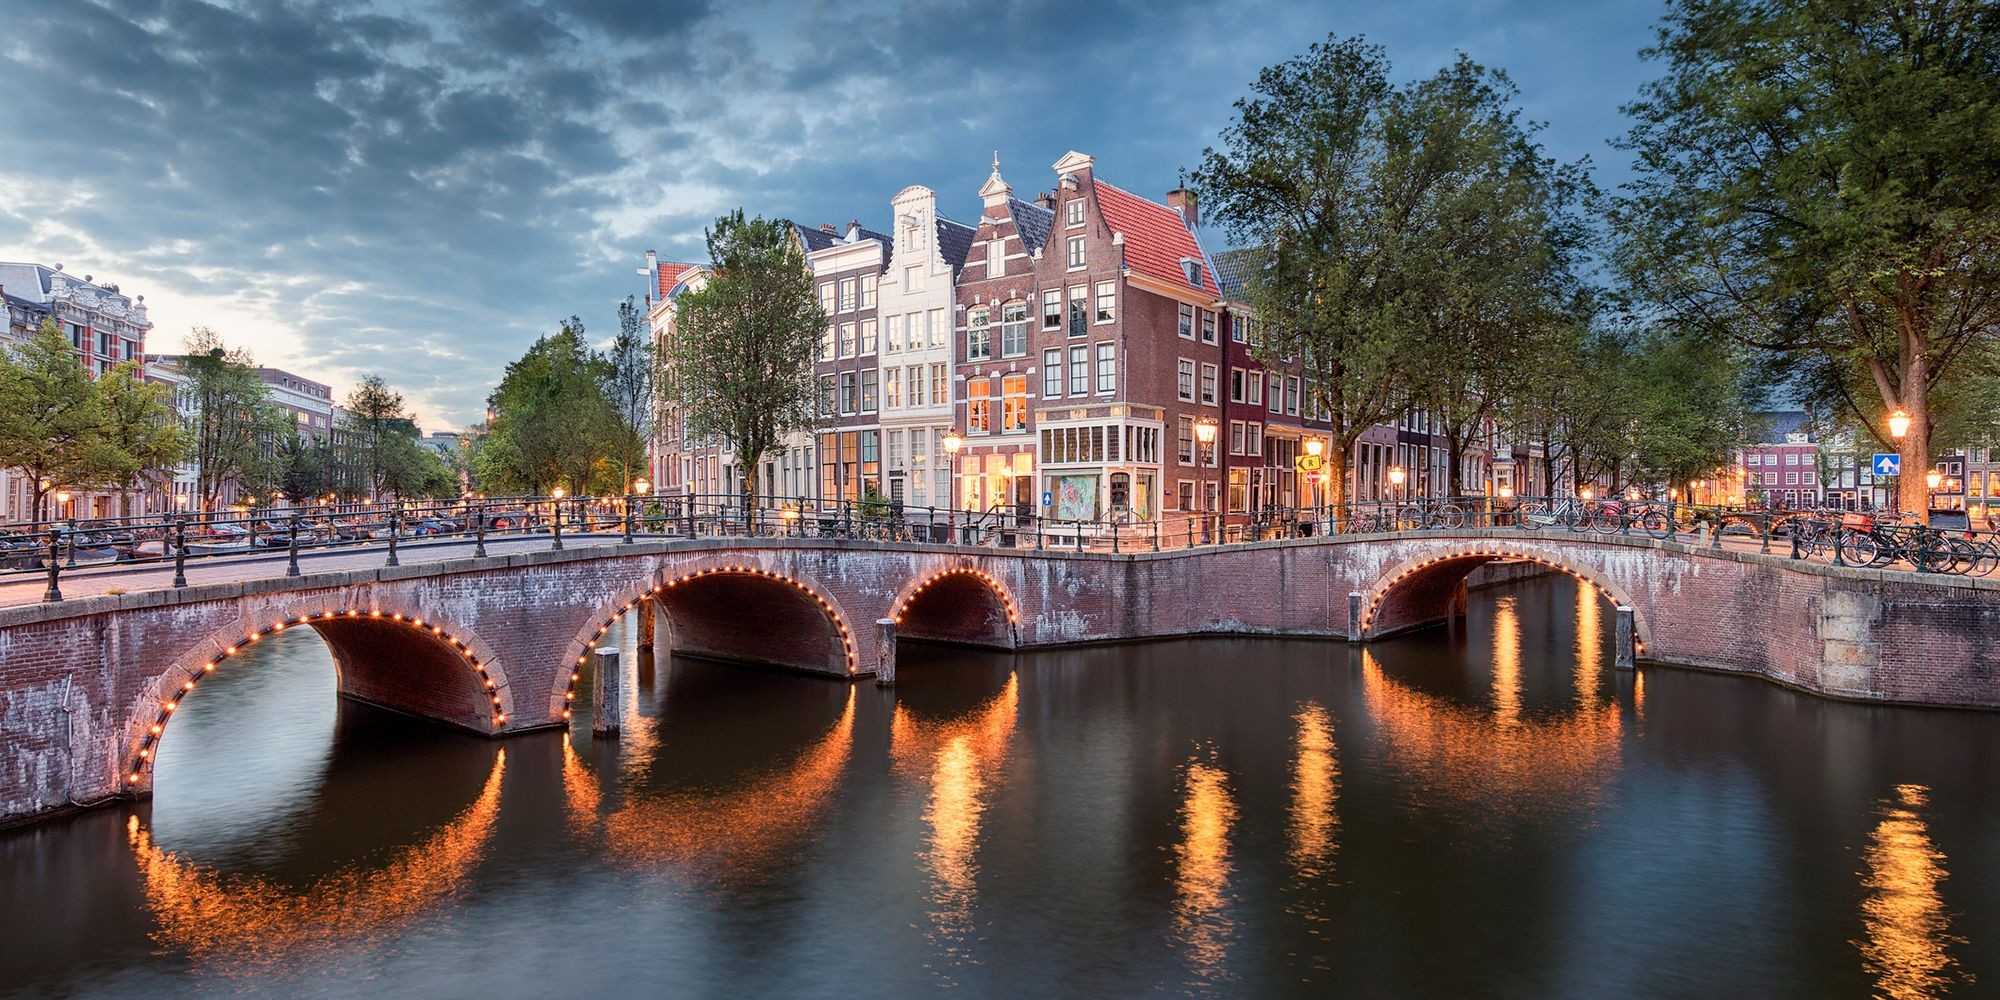 Đừng bỏ lỡ những nơi này khi tới du lịch Amsterdam - Hà Lan